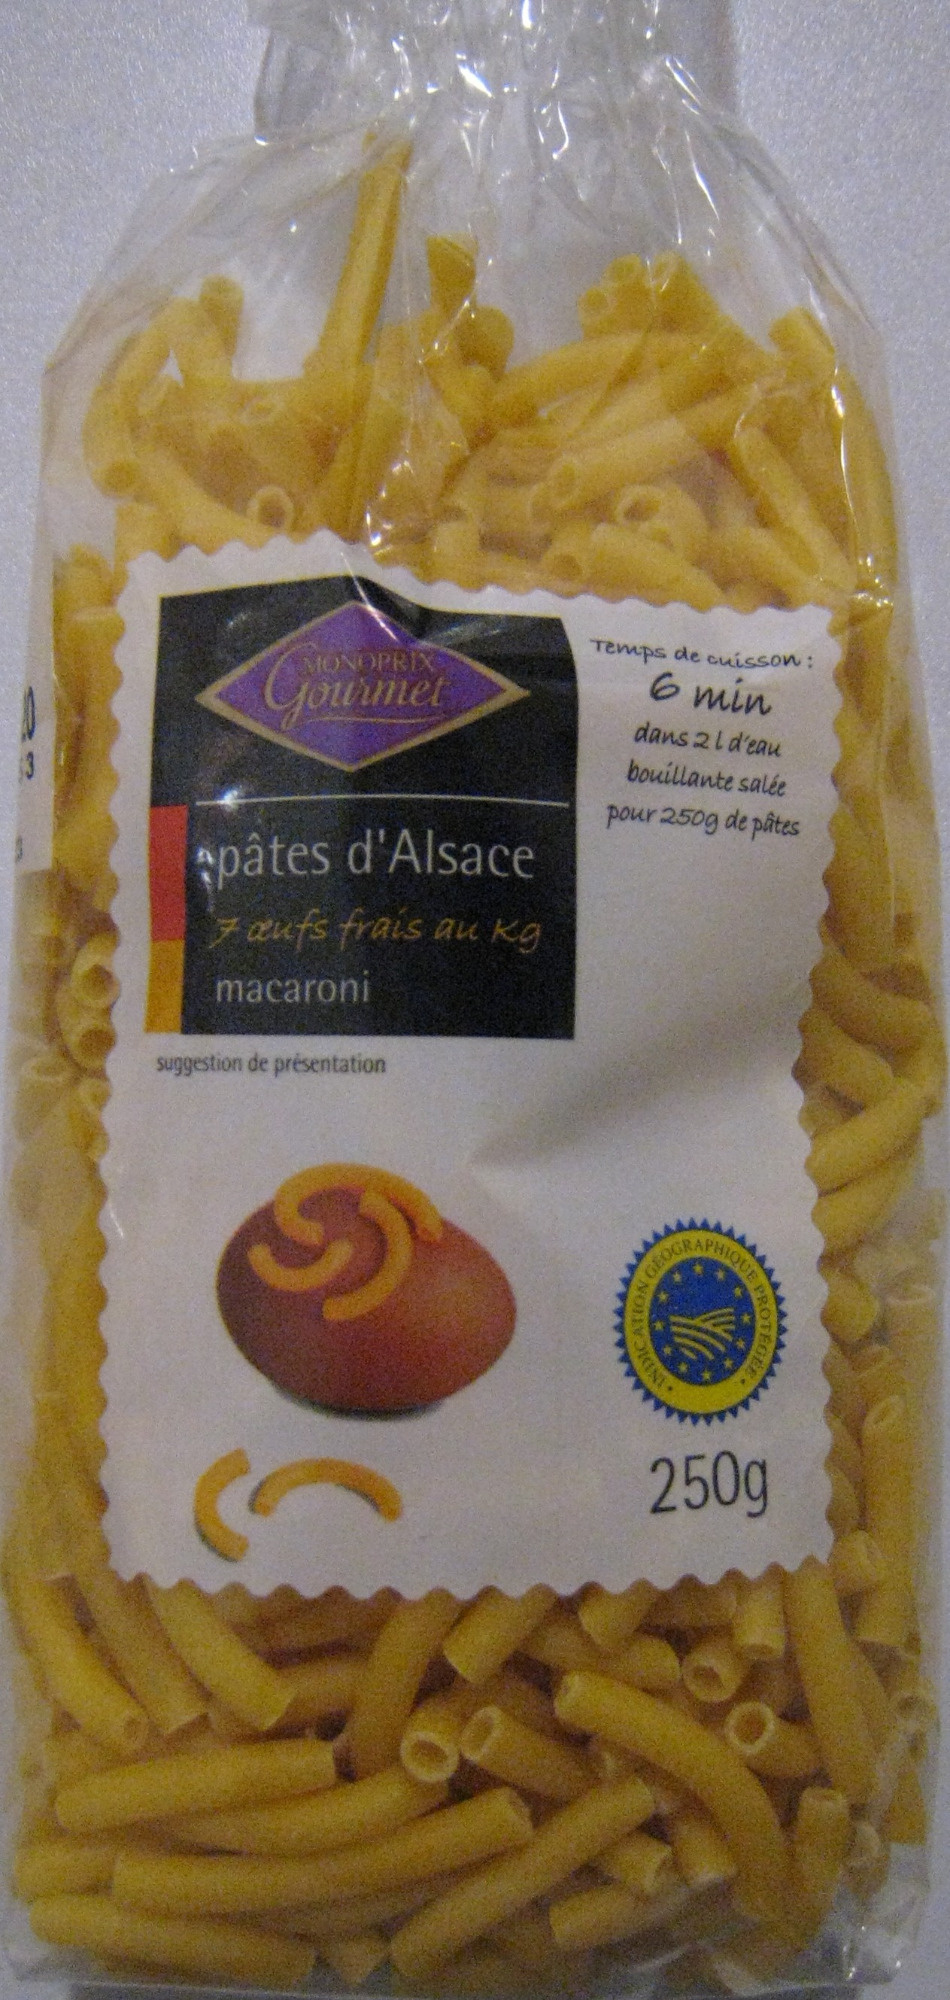 Pâtes d'Alsace (7 œufs frais au kilo), Macaroni - Product - fr